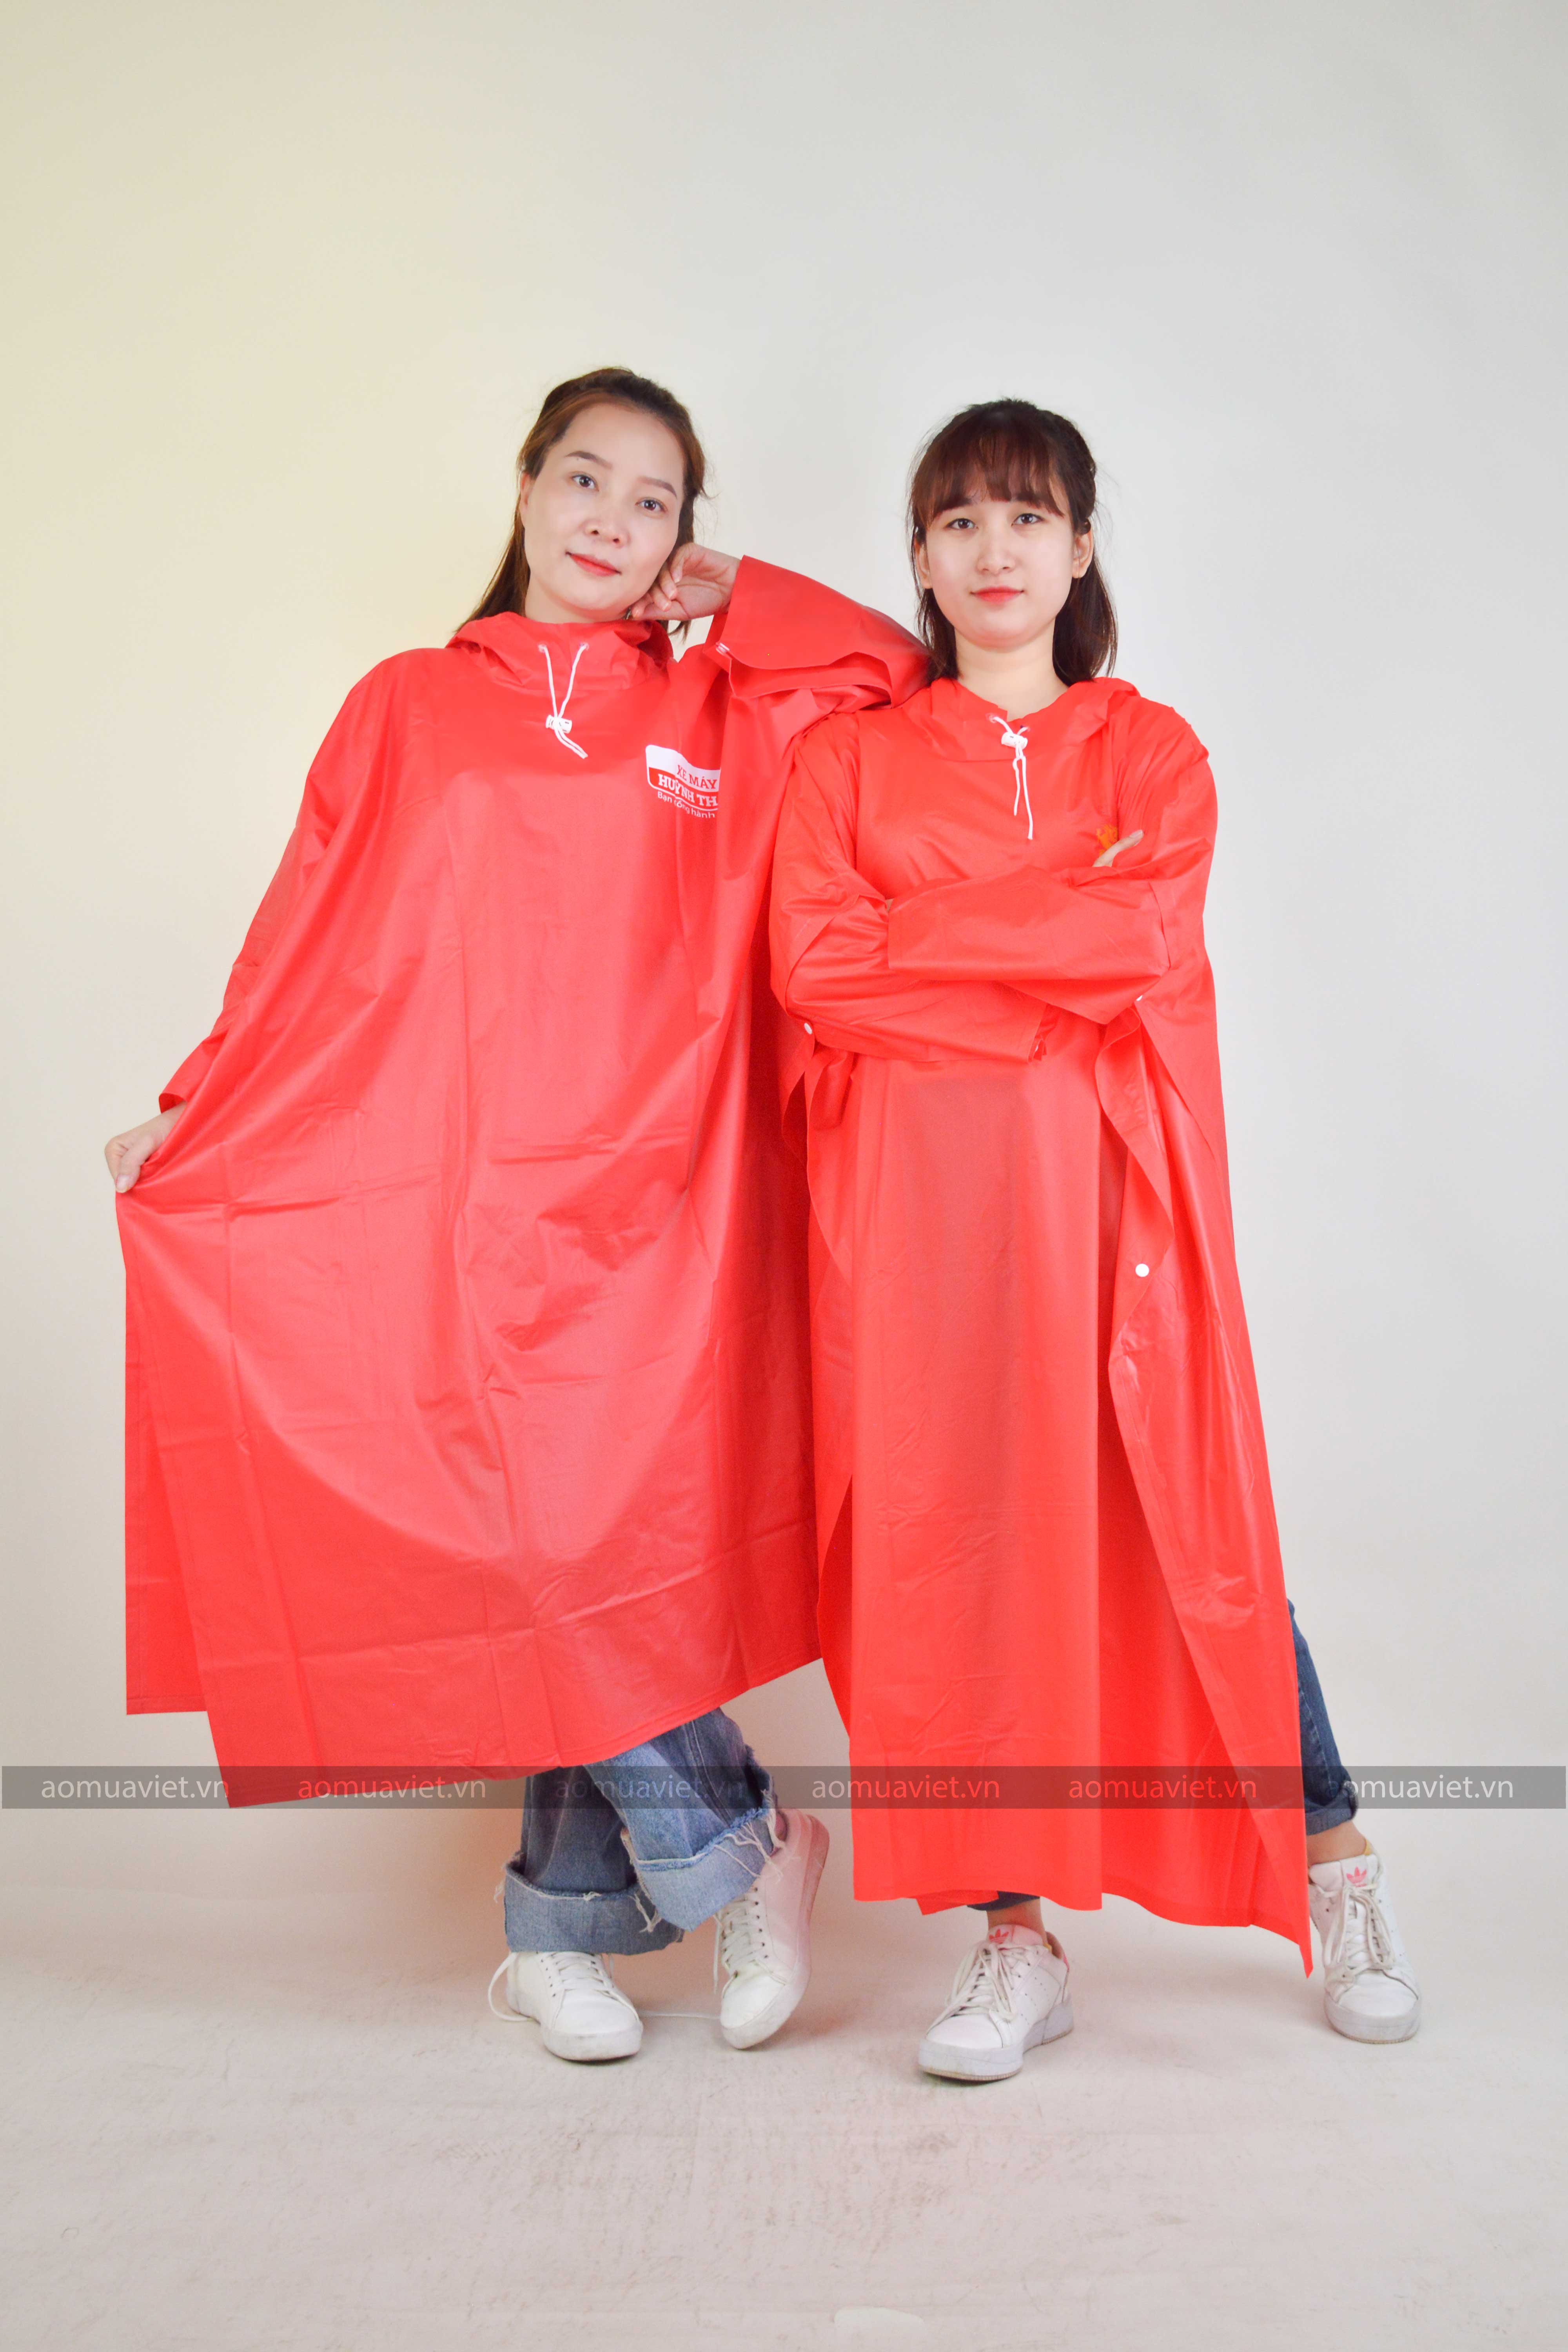 7 Chuyên sản xuất áo mưa quà tặng, khuyến mãi, quảng cáo thương hiệu uy tín